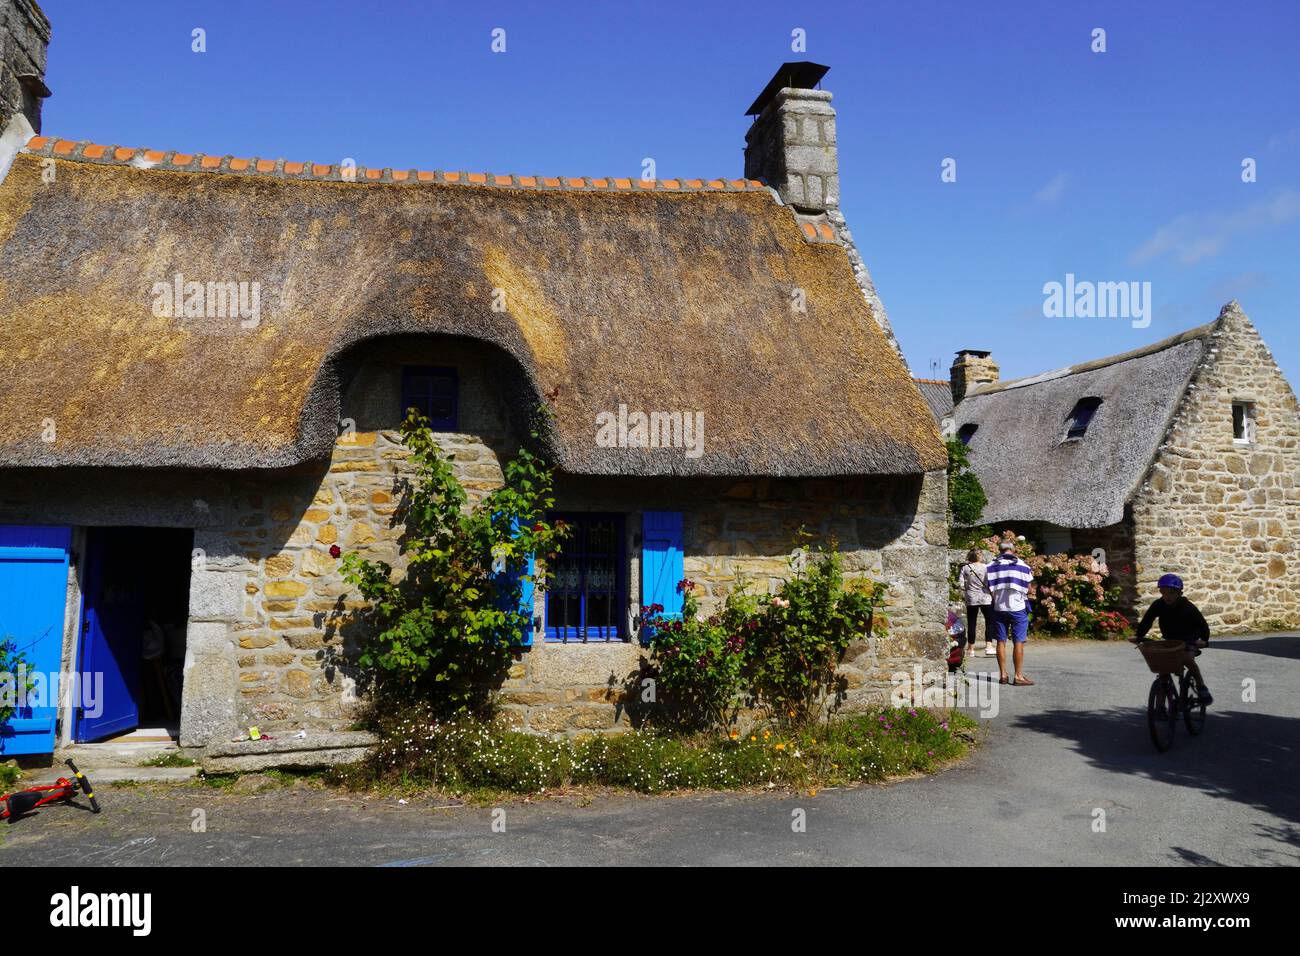 Nevez (Bretagne, nord-ouest de la France) : maisons traditionnelles bretonnes de chaume construites en granit et couvertes de roseaux, dans le village de Kerascoet datant Banque D'Images